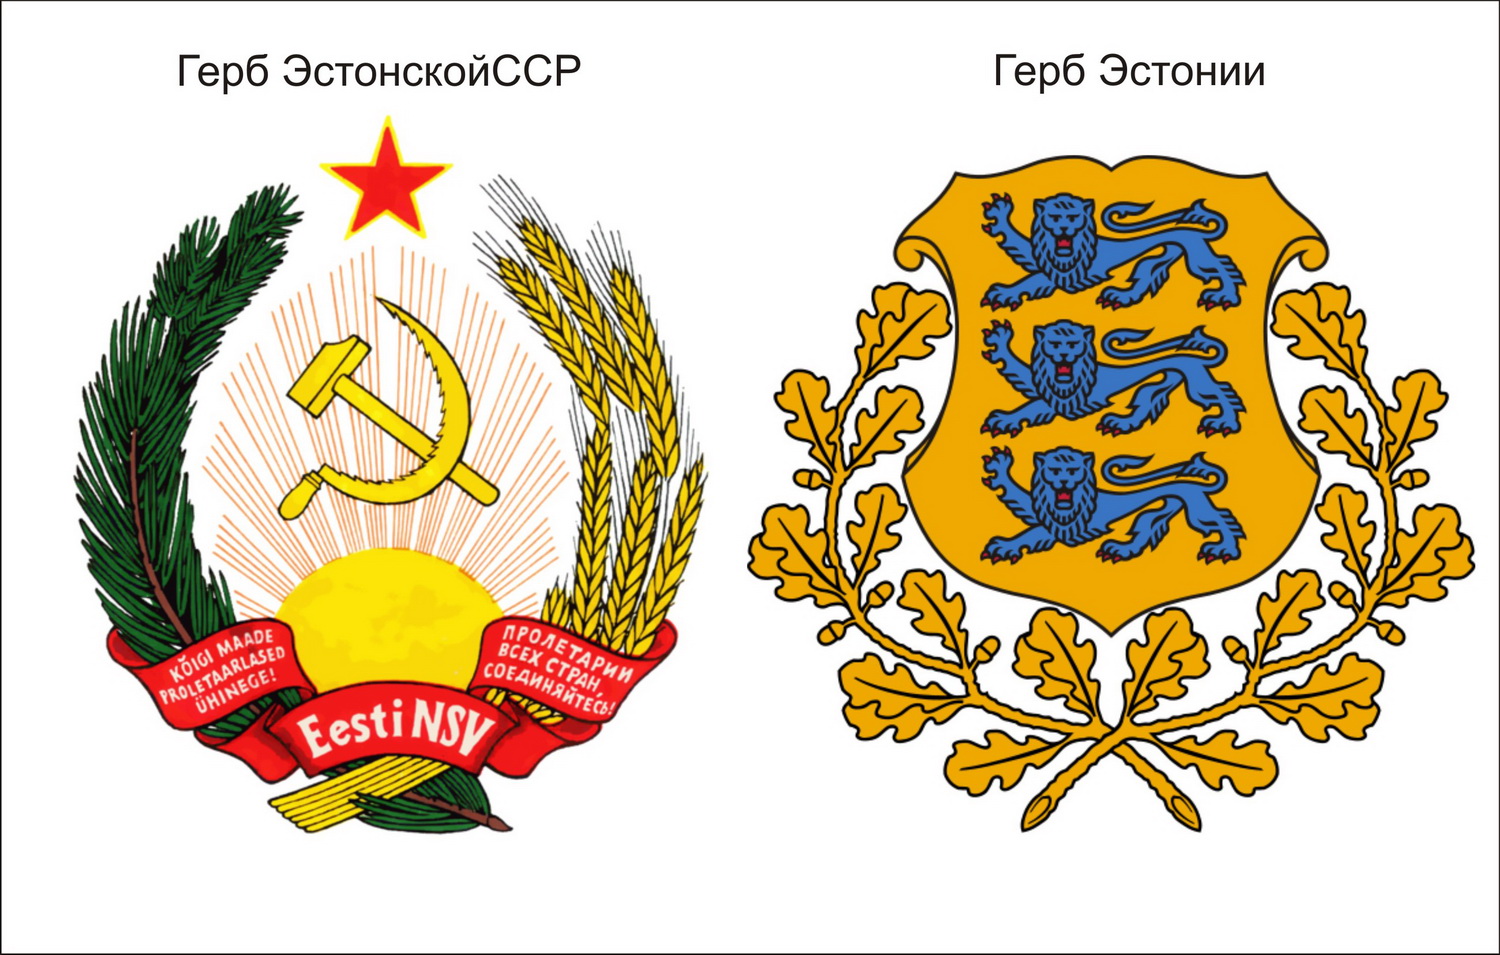 Гербы советских республик Эстонская ССР